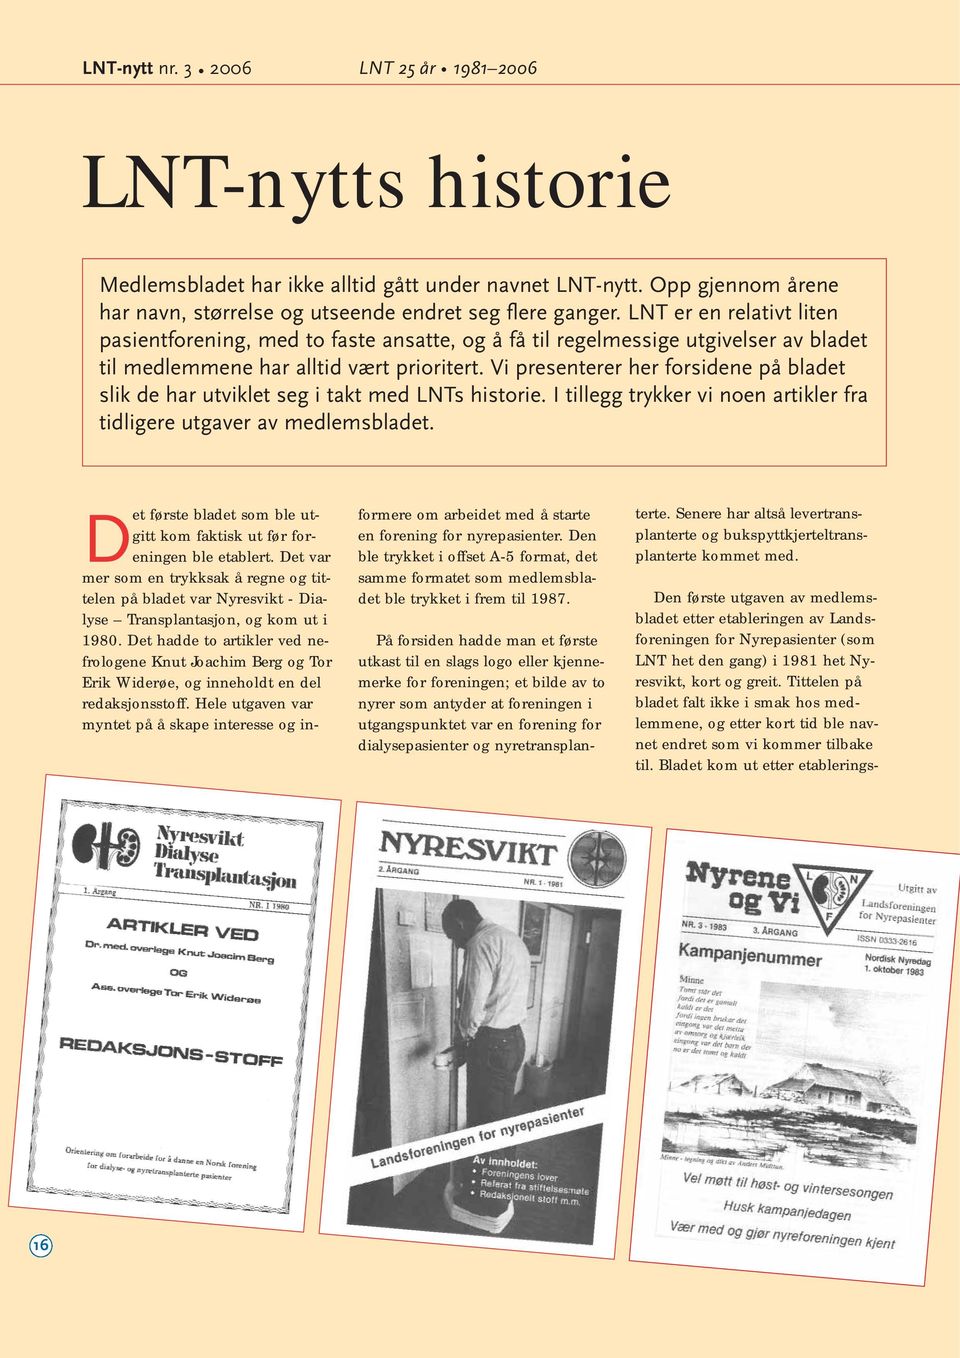 Vi presenterer her forsidene på bladet slik de har utviklet seg i takt med LNTs historie. I tillegg trykker vi noen artikler fra tidligere utgaver av medlemsbladet.